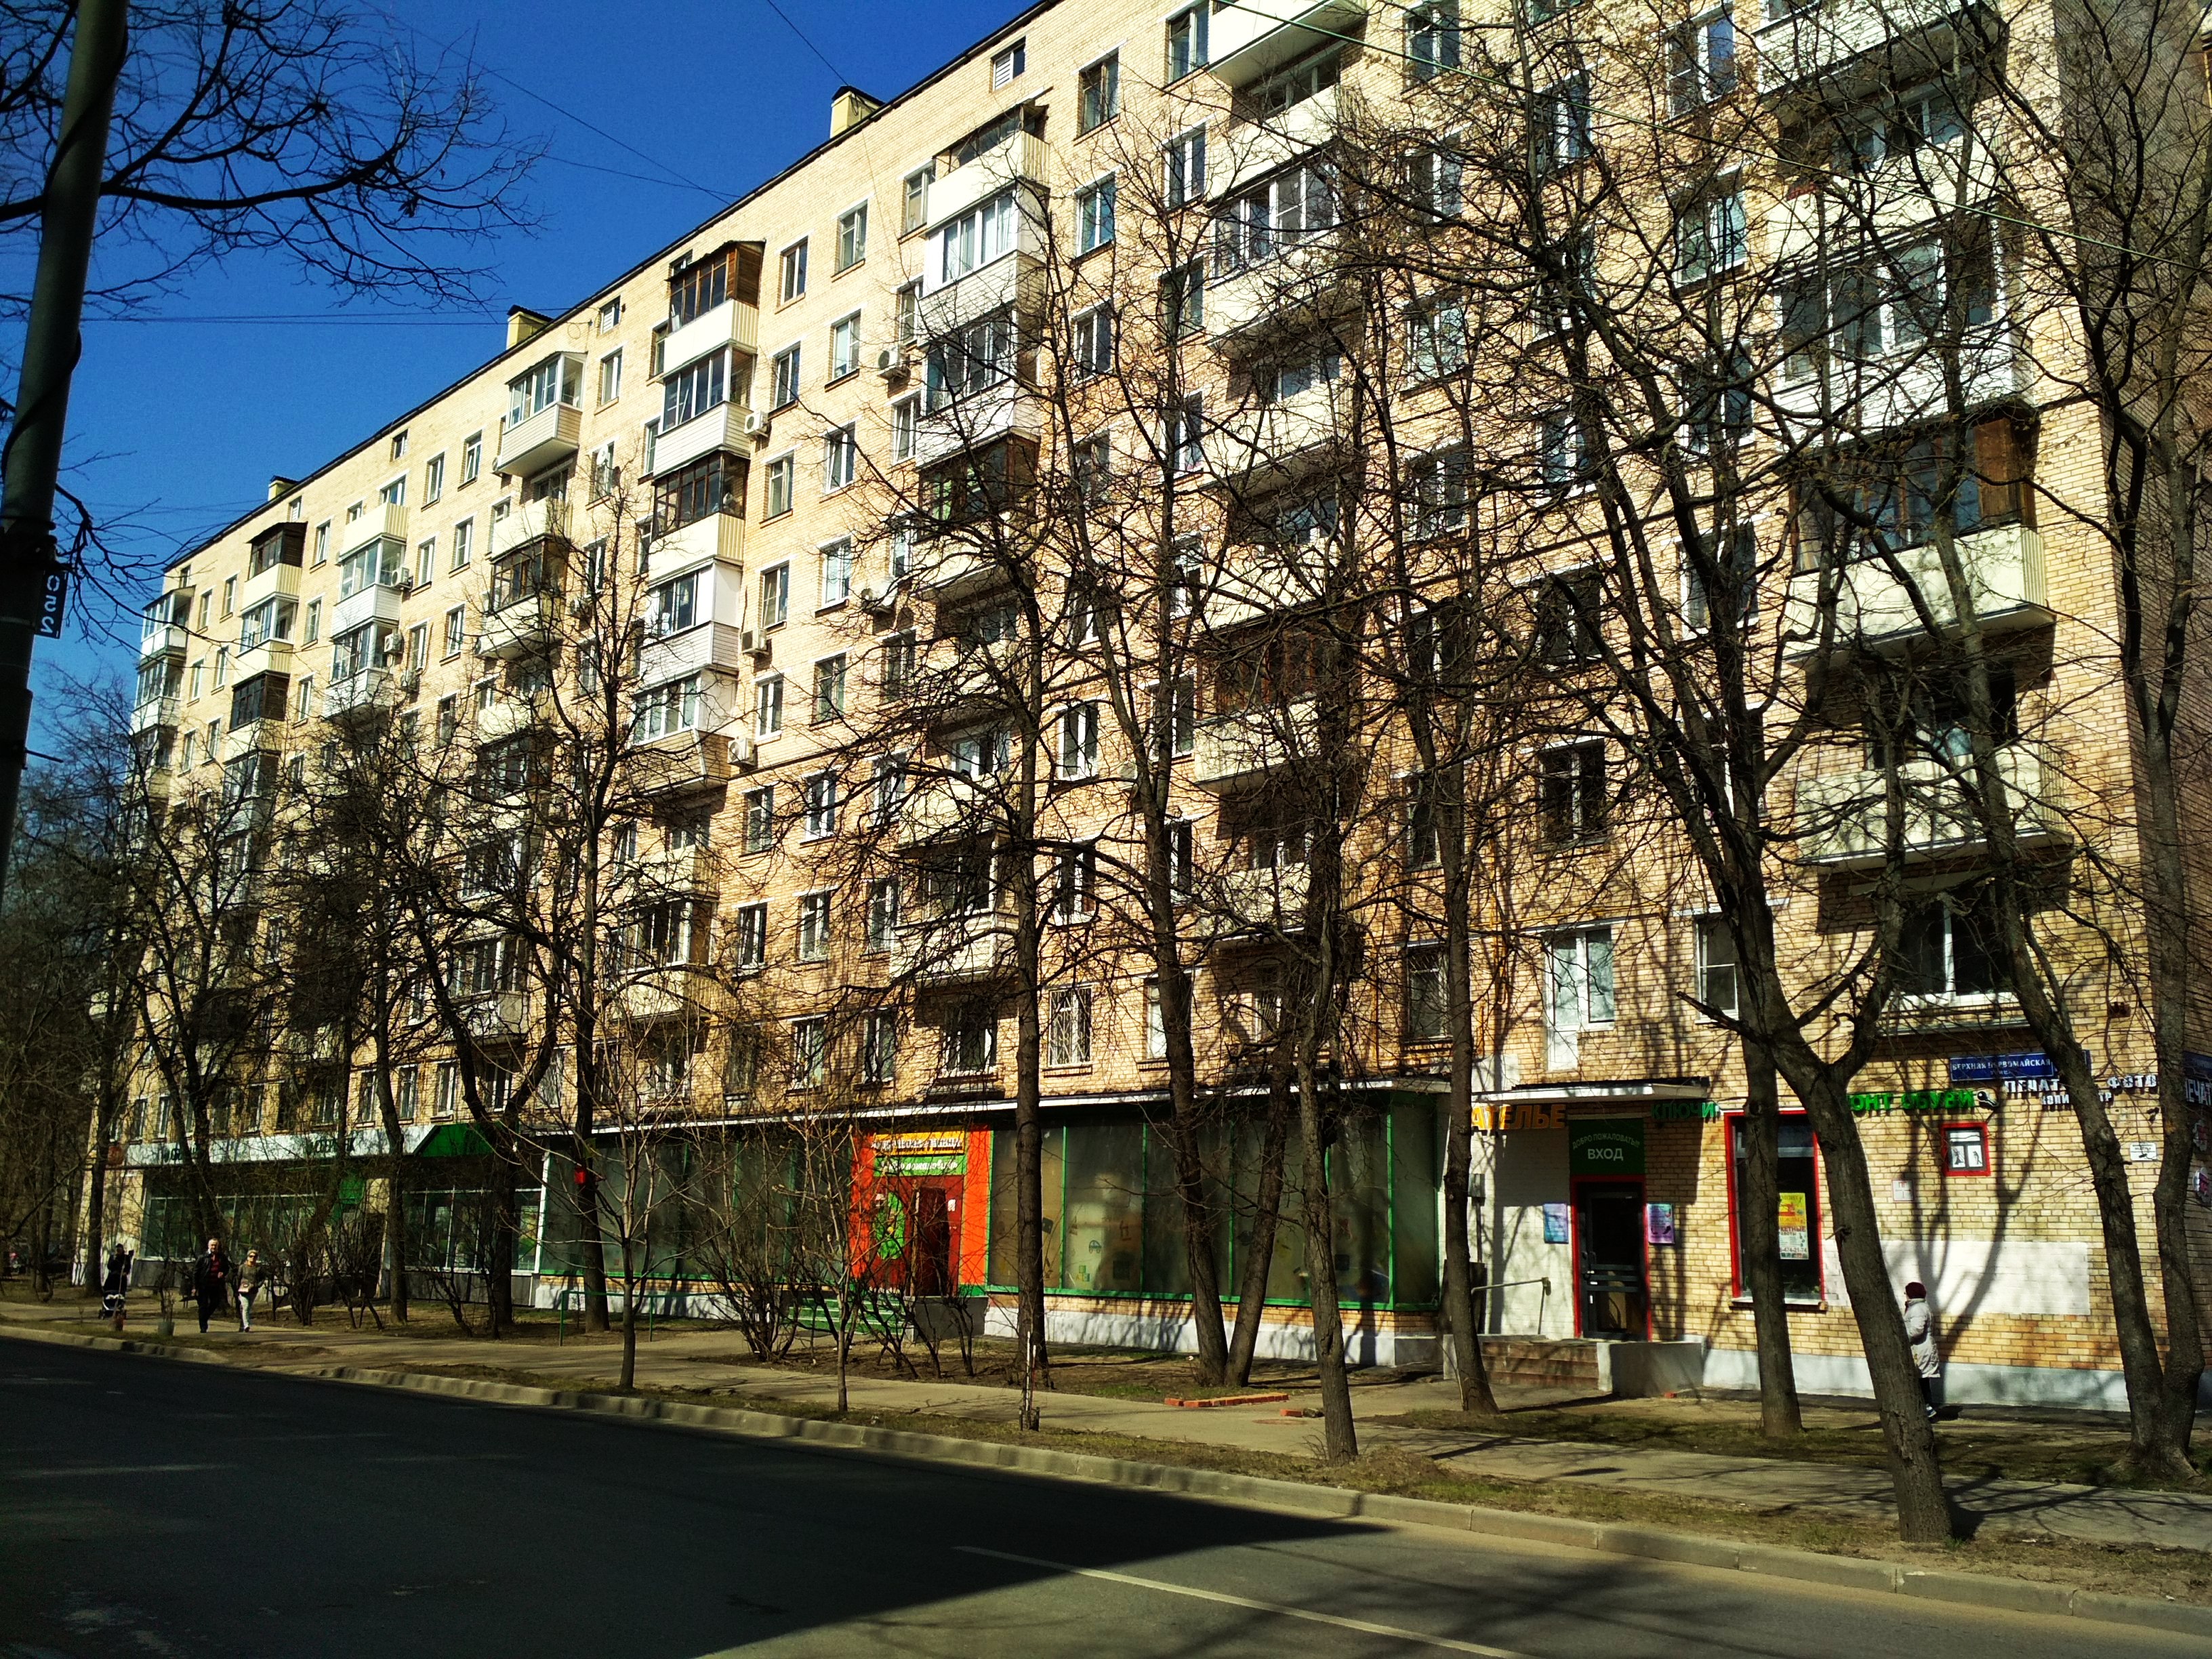 Первомайская улица александров